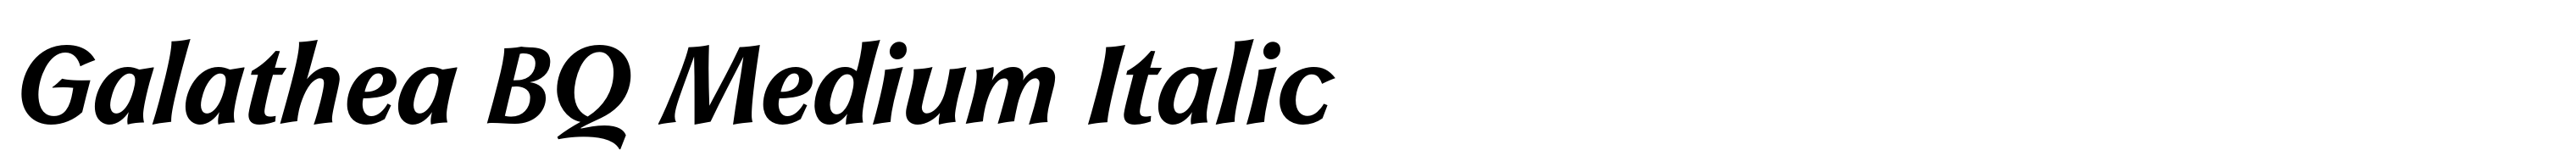 Galathea BQ Medium Italic